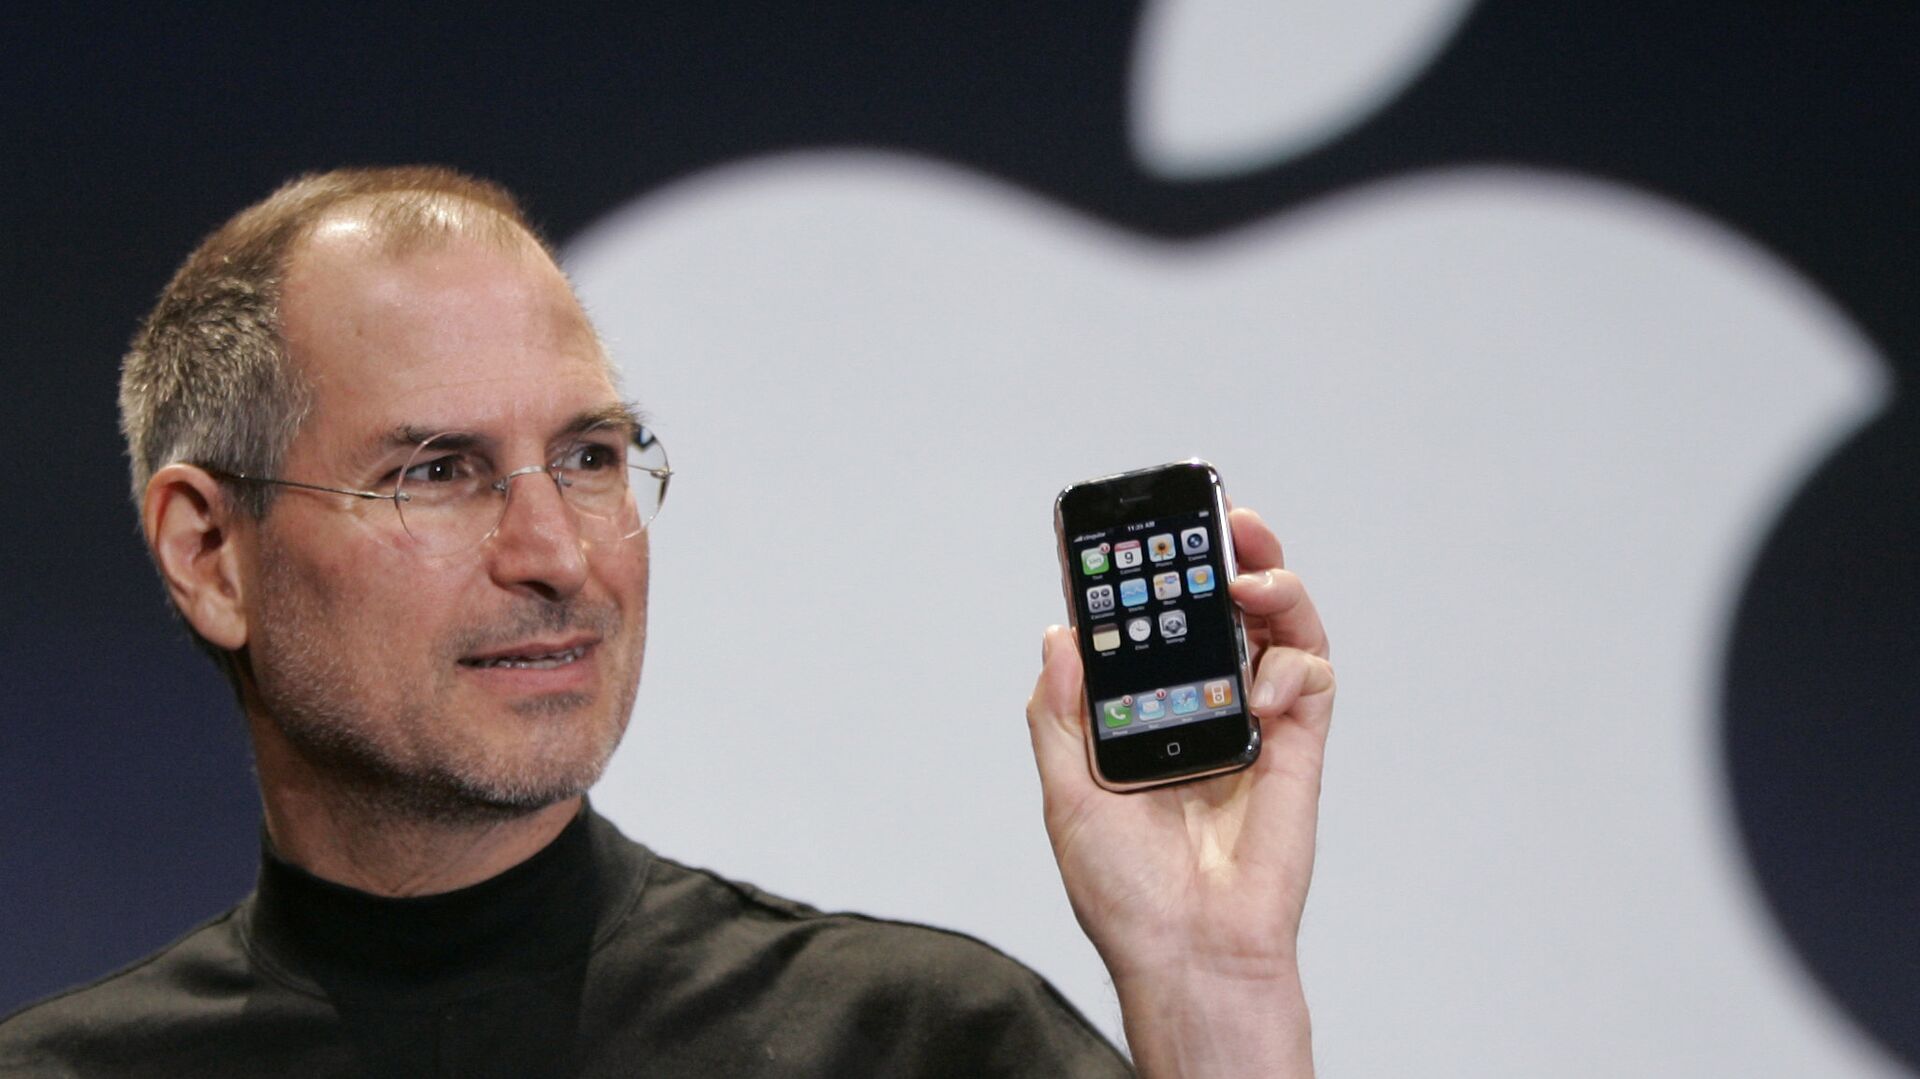 Генеральный директор Apple Стив Джобс показывает iPhone на конференции MacWorld Expo. 9 января 2007 год - РИА Новости, 1920, 25.08.2022